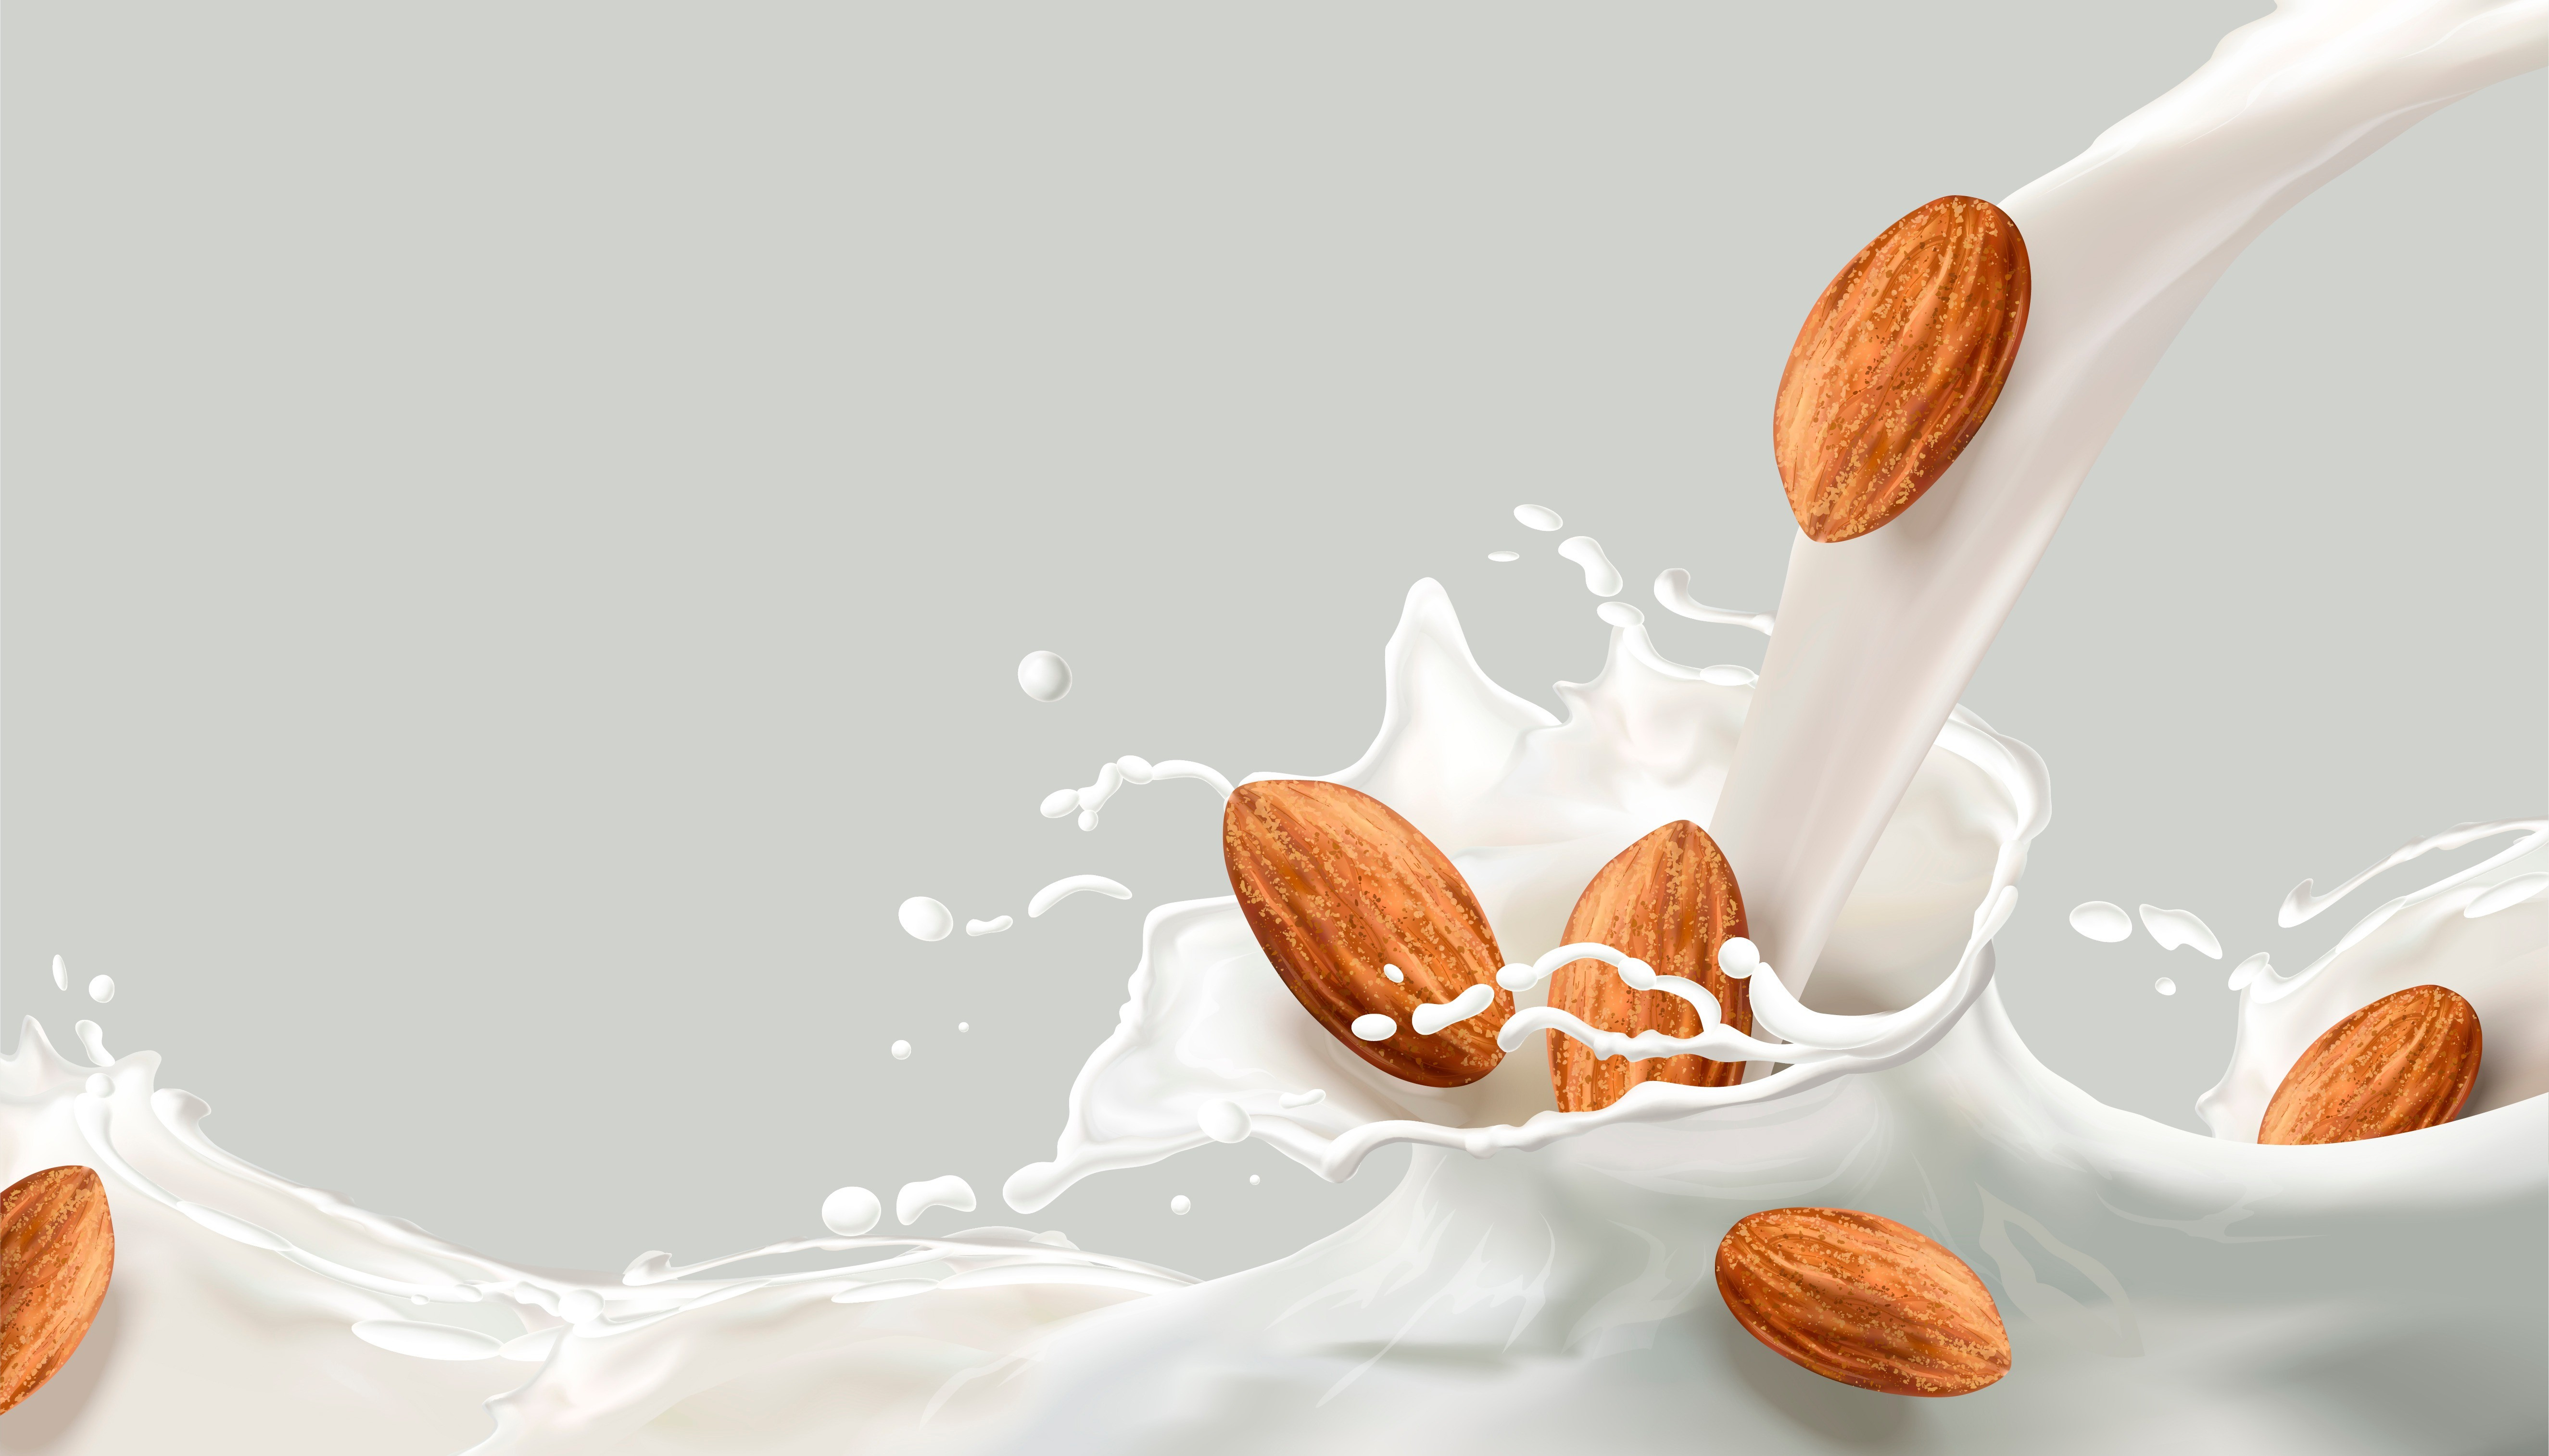 Не переплачивай: 5 видов растительного молока, которые ты можешь сделать сама